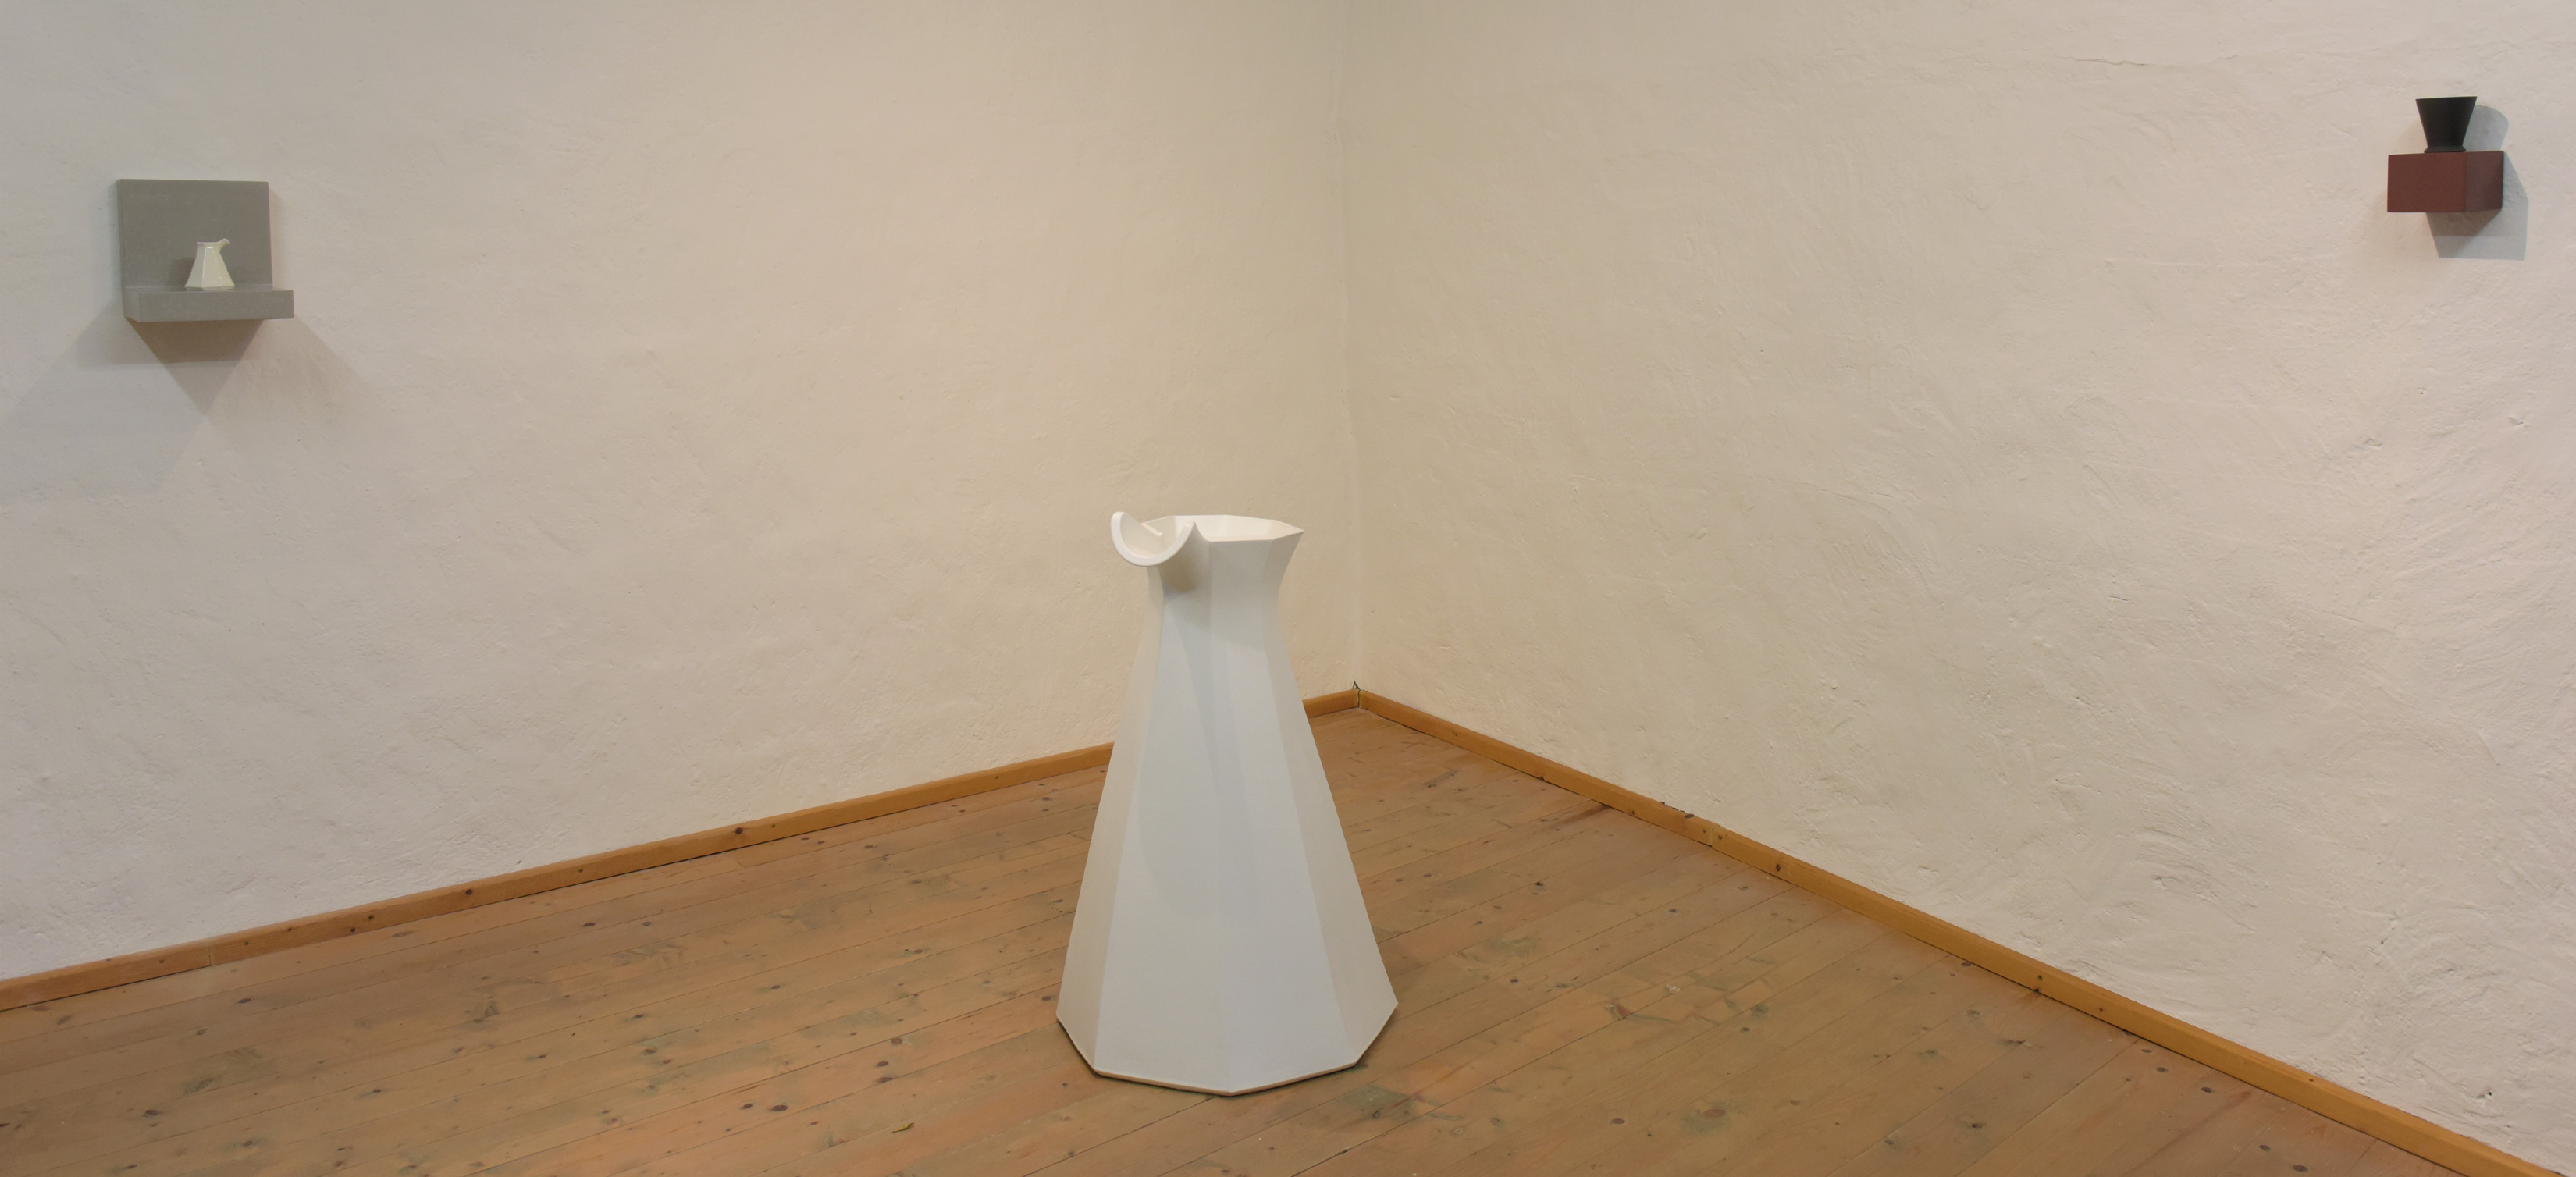 GefaessErweiterung-View into the exhibition-galerie metzger kunst contemporary art ceramic